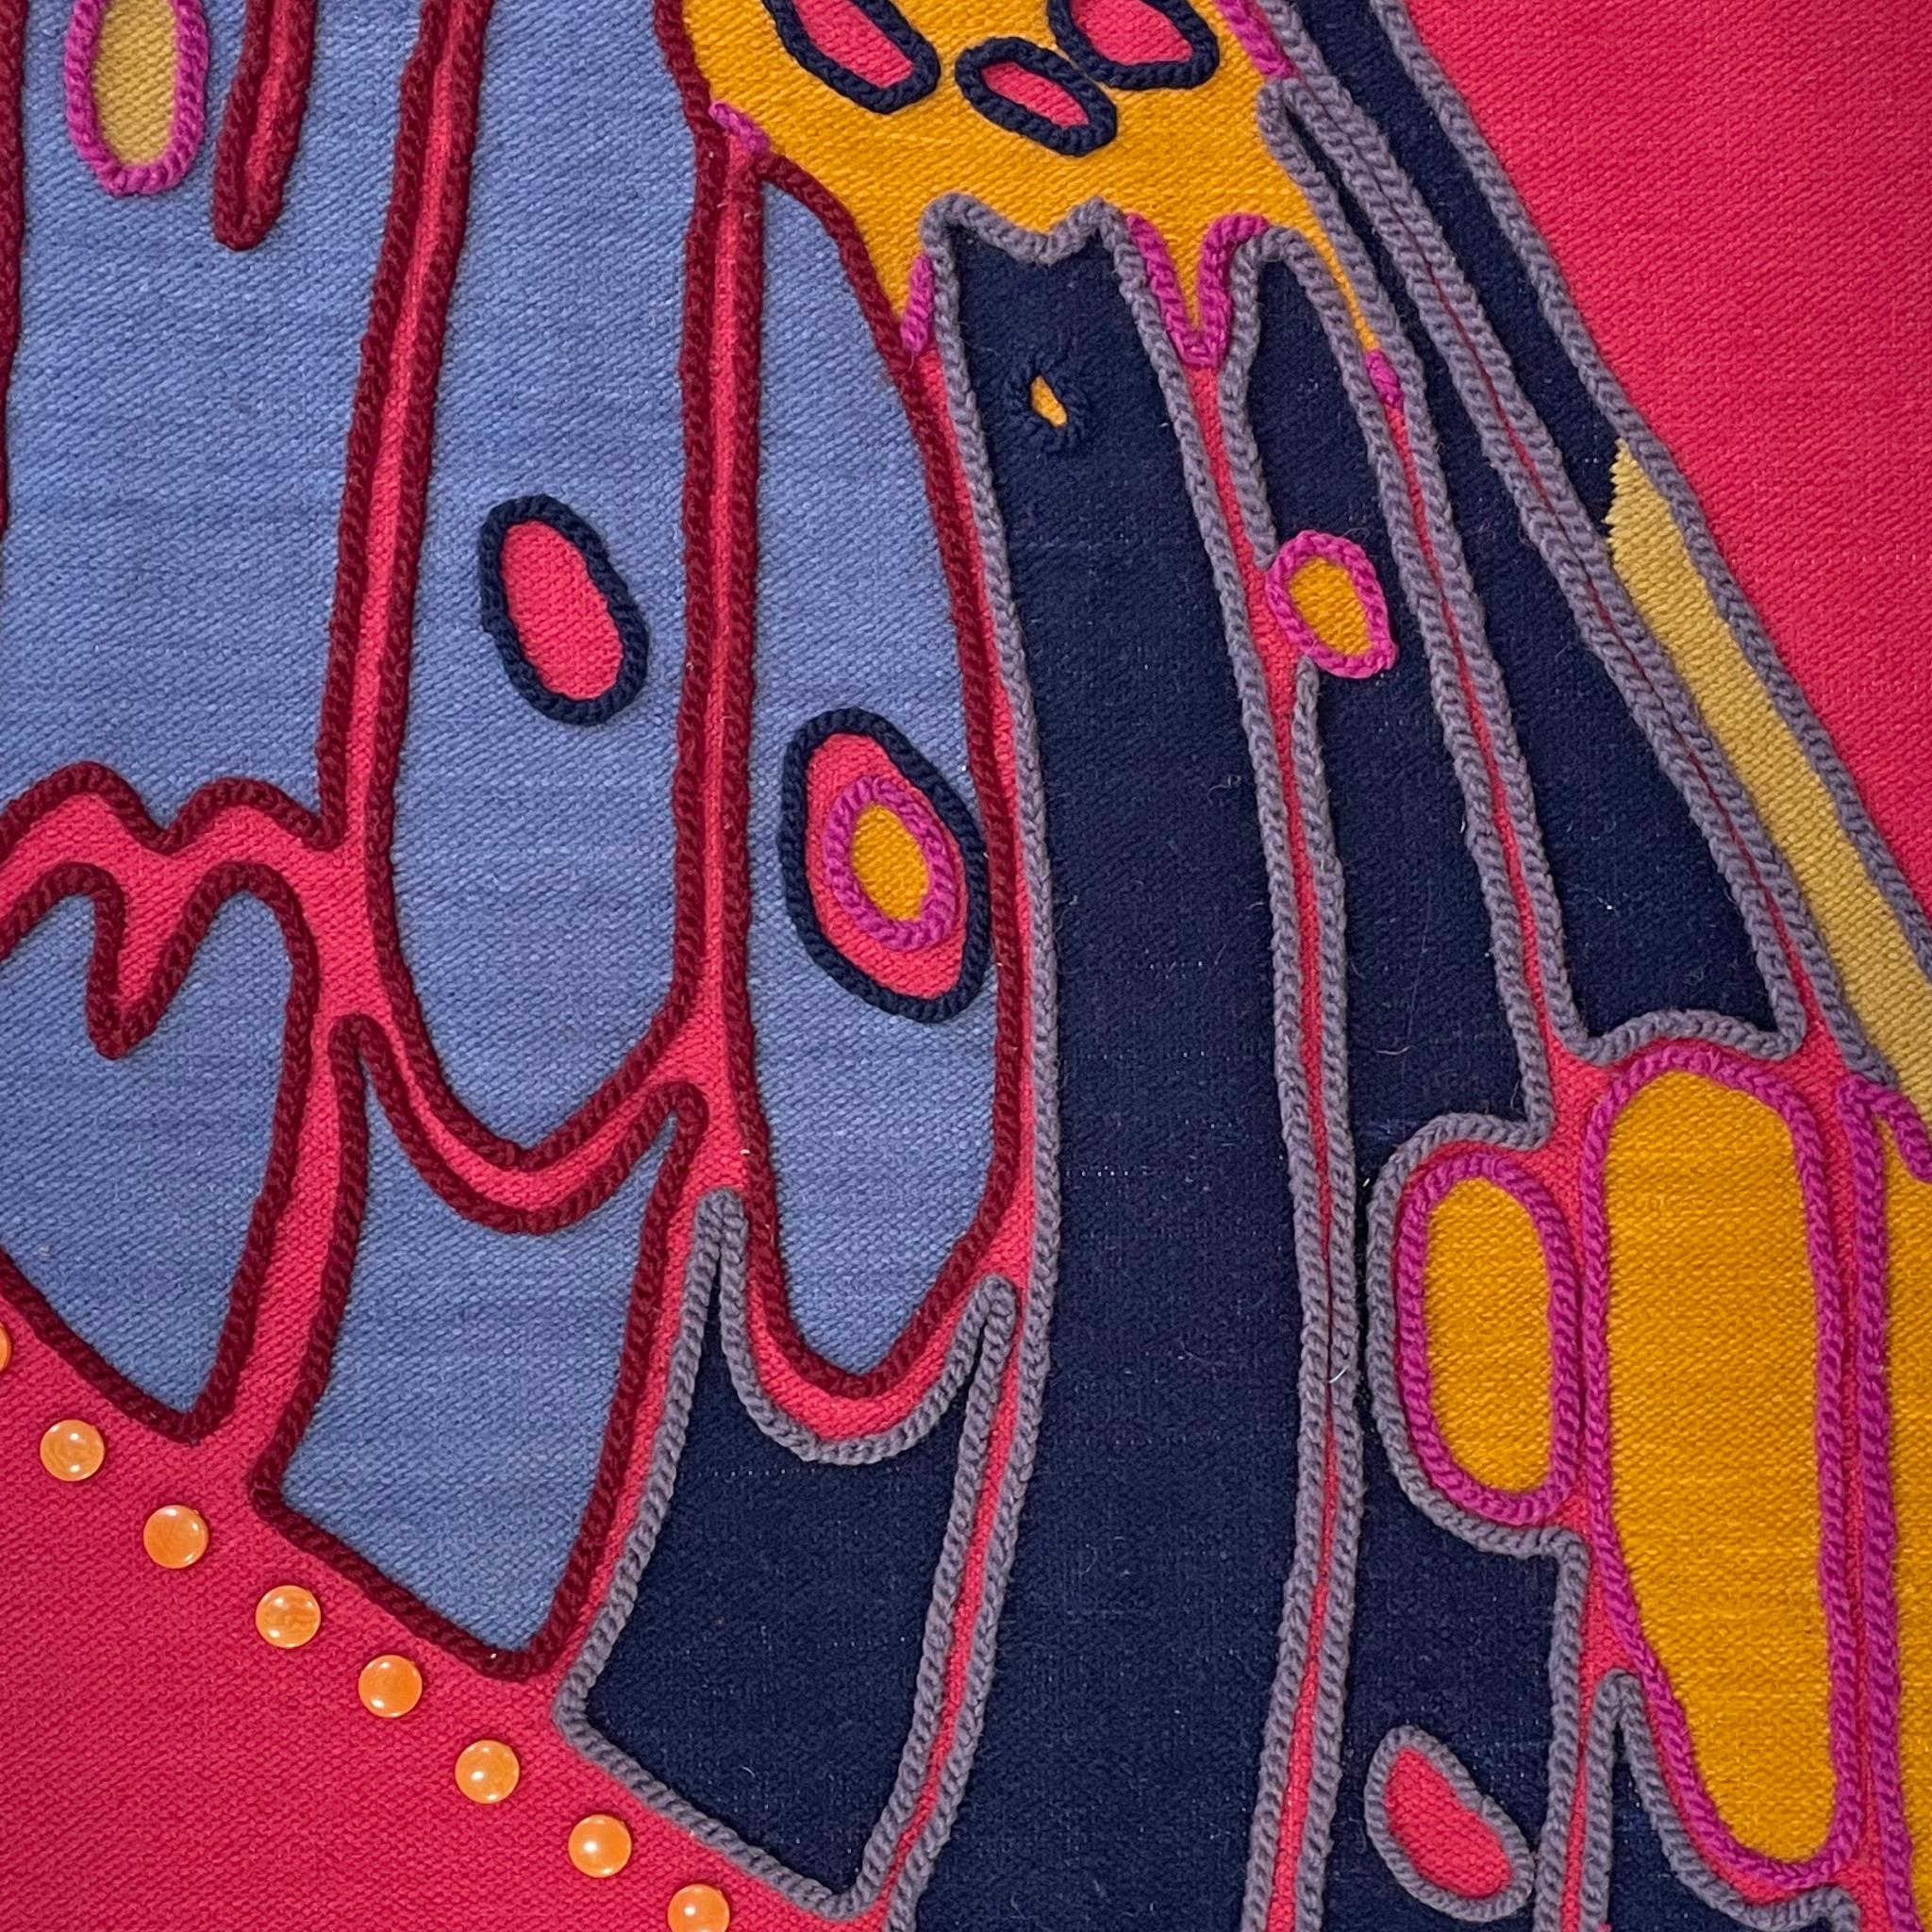 Der handgewebte und mit farbechten Farben handgefärbte Wandteppich Polilla aus 100% ecuadorianischer Schafwolle wurde von Belen Mena entworfen und ist von Motten des ecuadorianischen Nebelwaldes inspiriert. Jeder Wandteppich ist aufgrund des